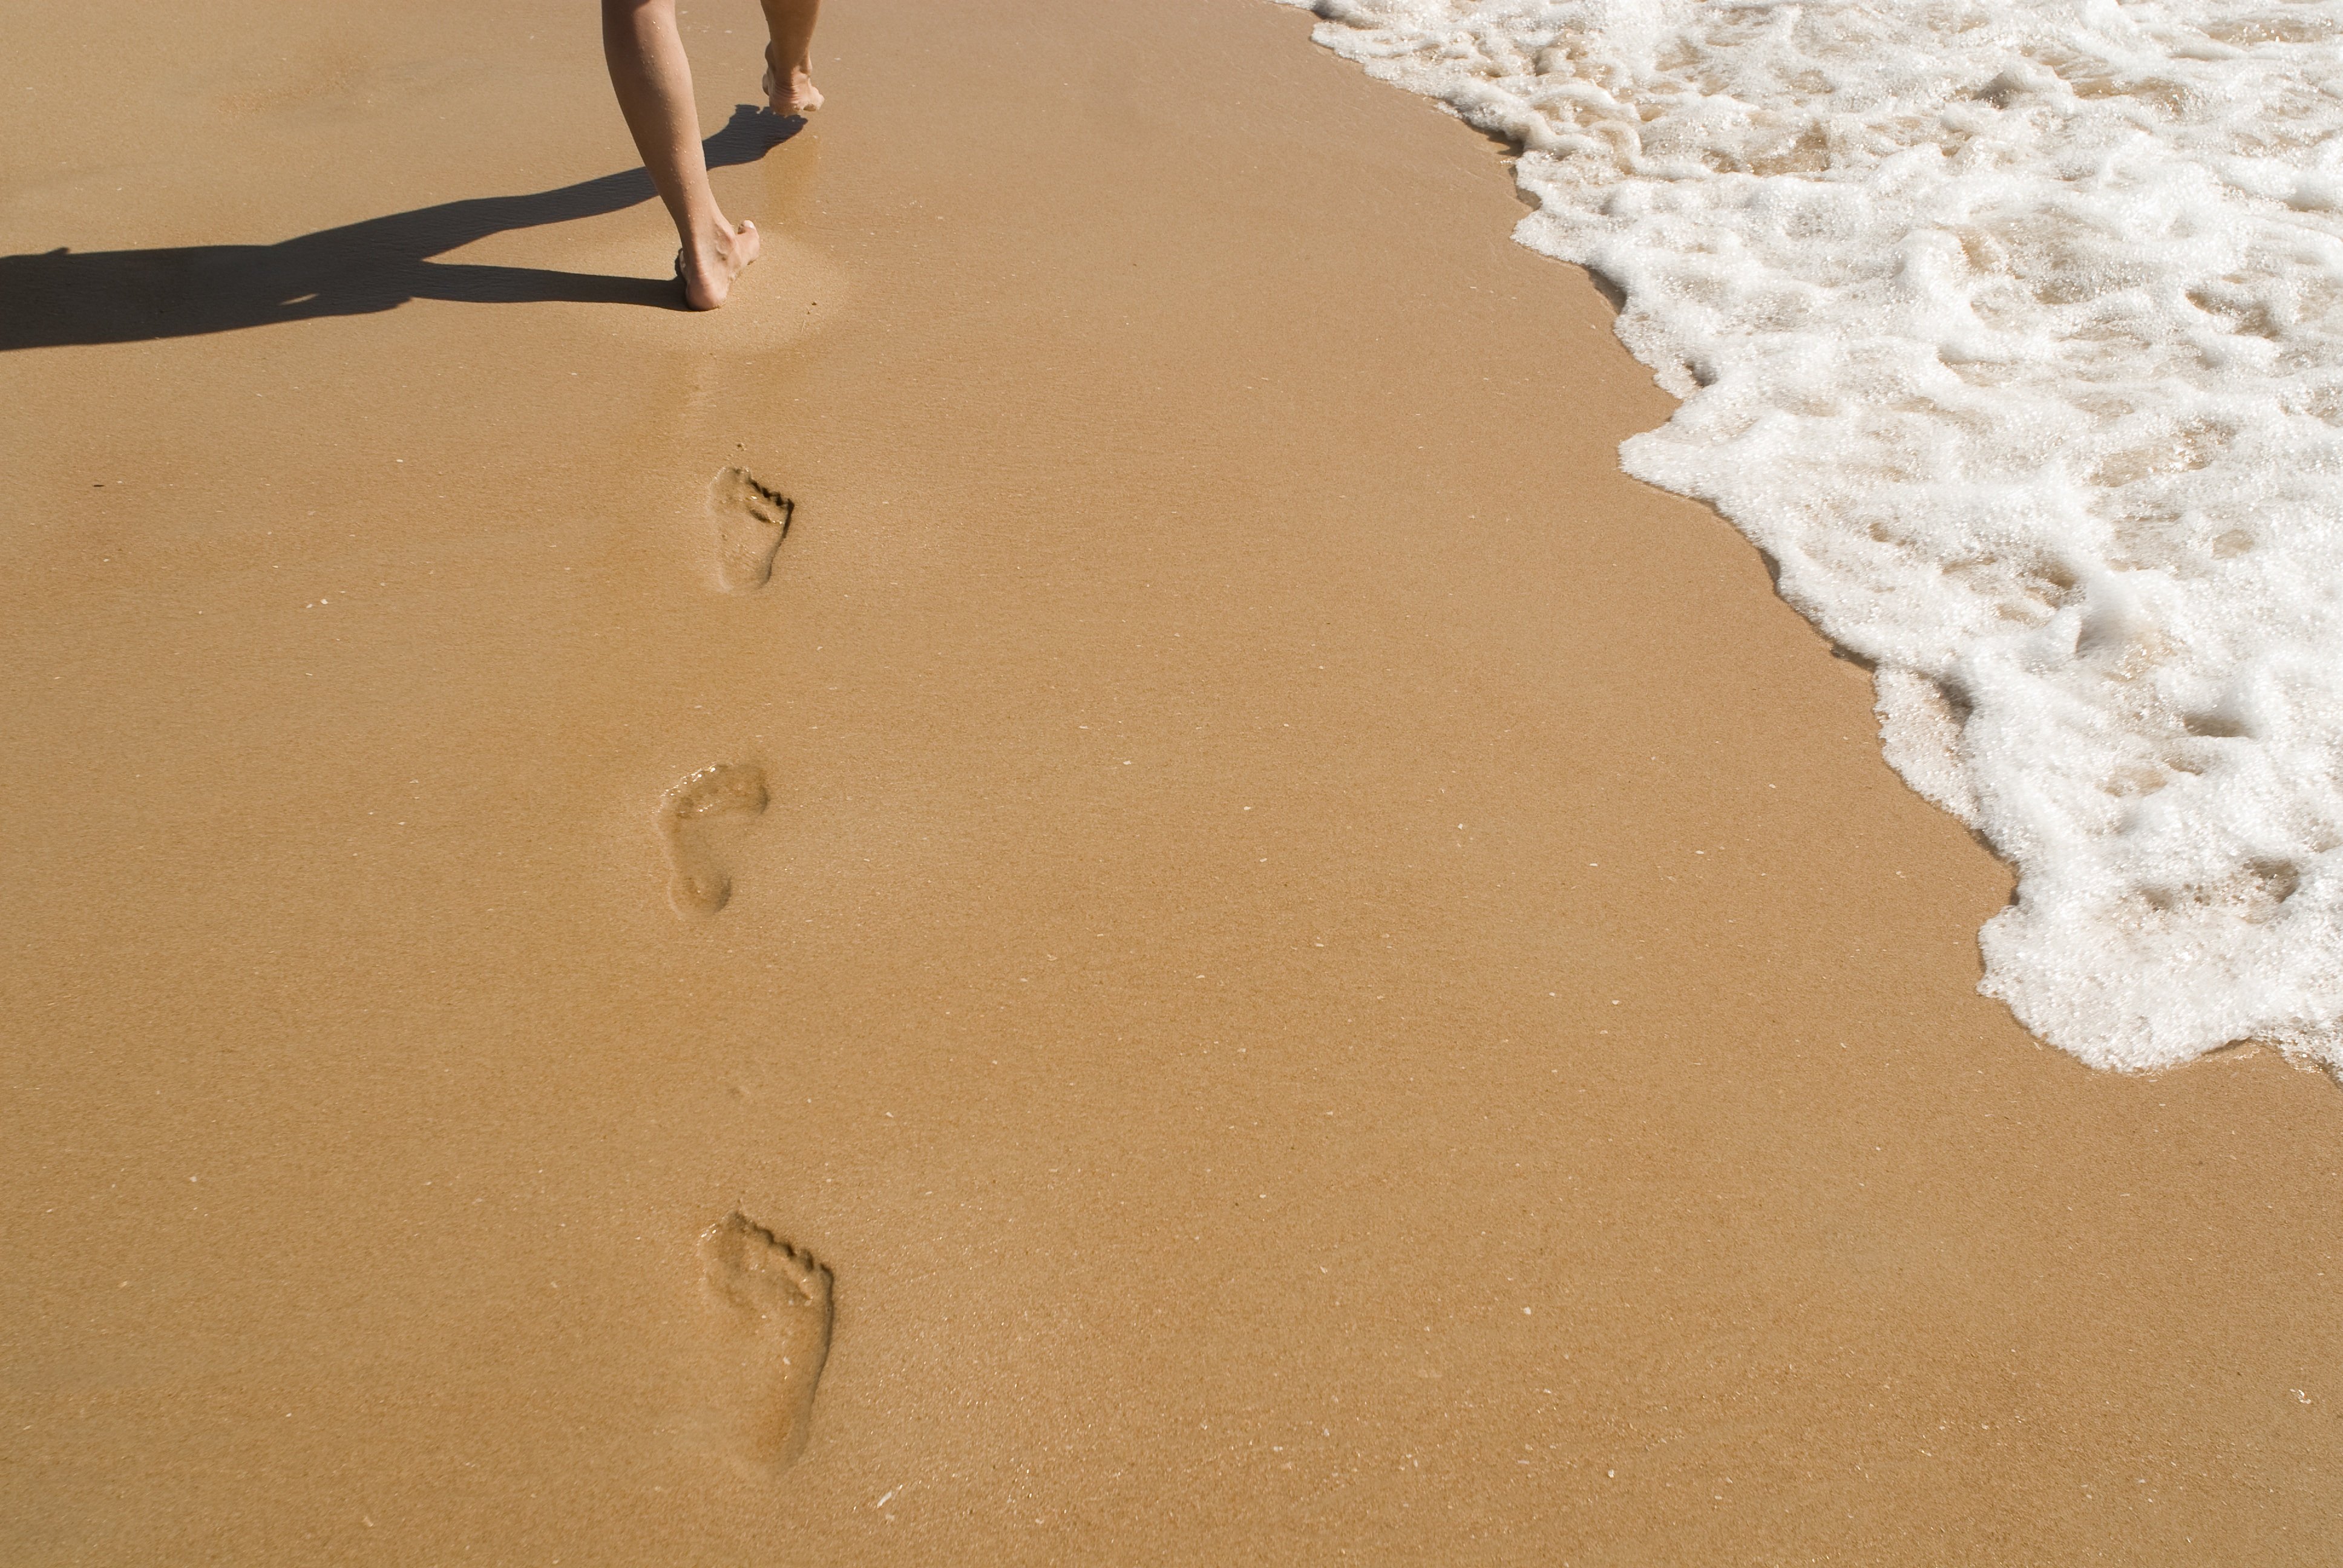 Следы на воде 5. Следы на песке. Следы человека на песке. Пляж песок. След стопы на песке.